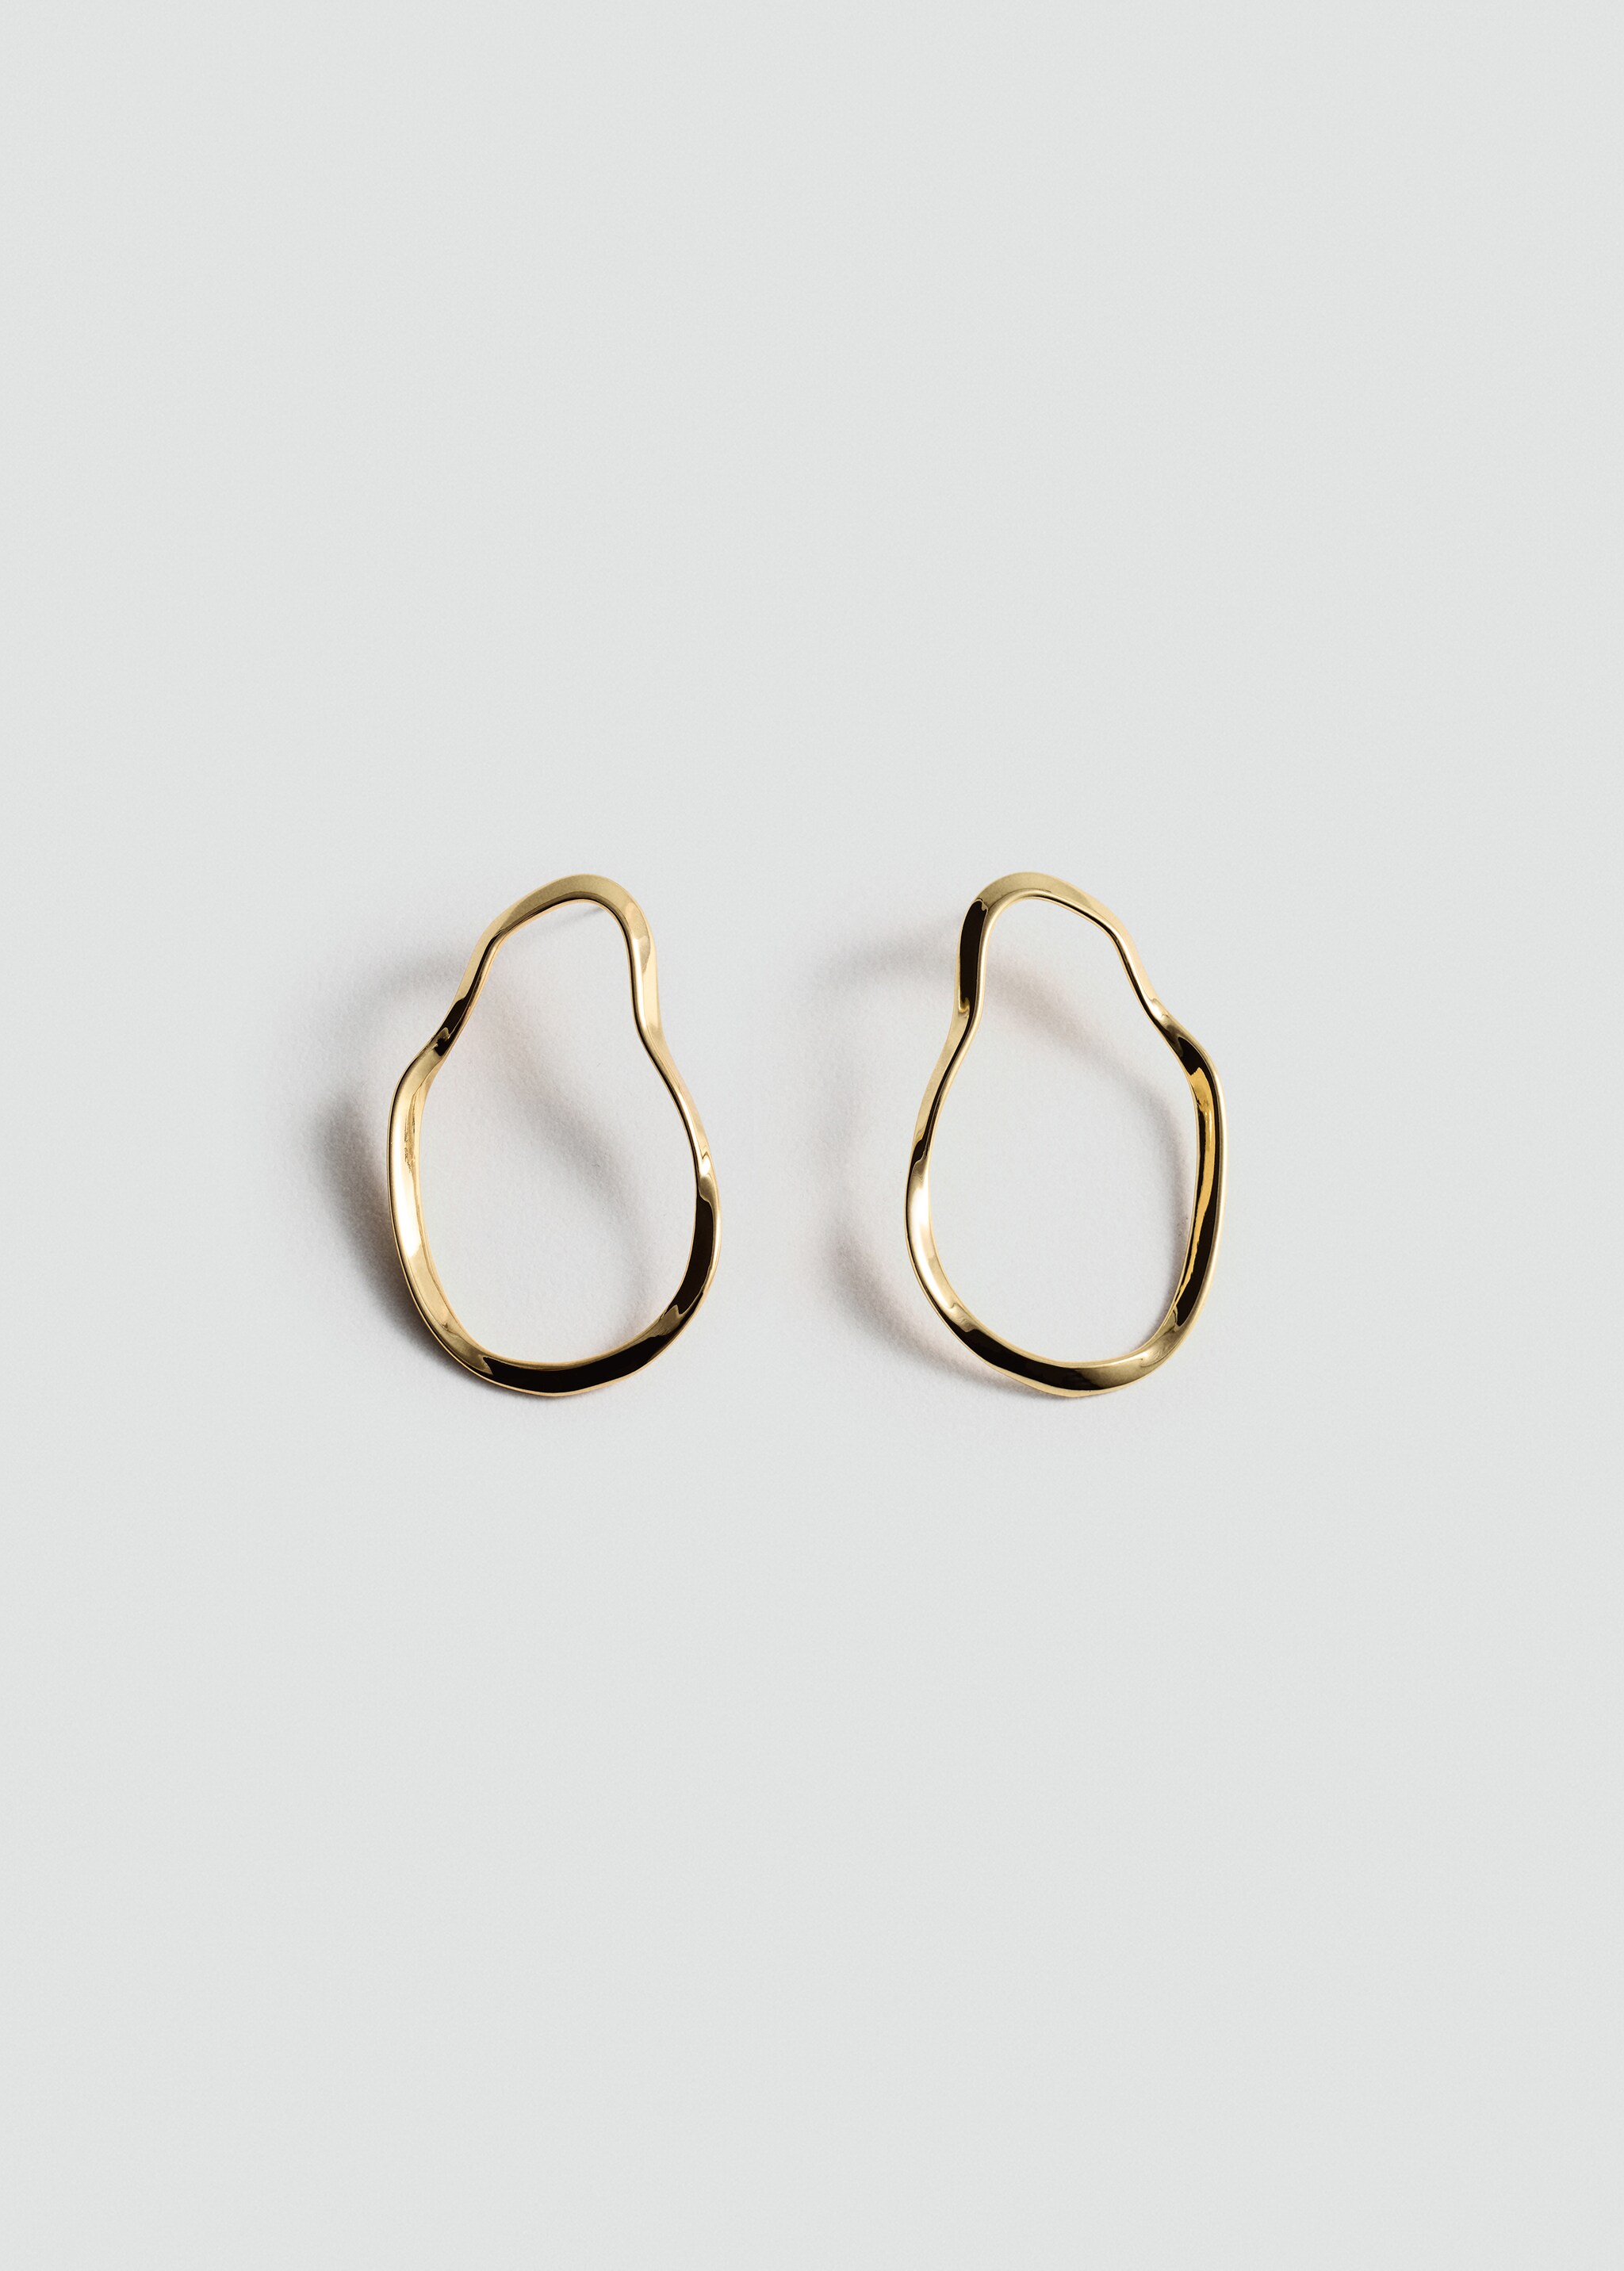 Irregular oval earrings - Artigo sem modelo